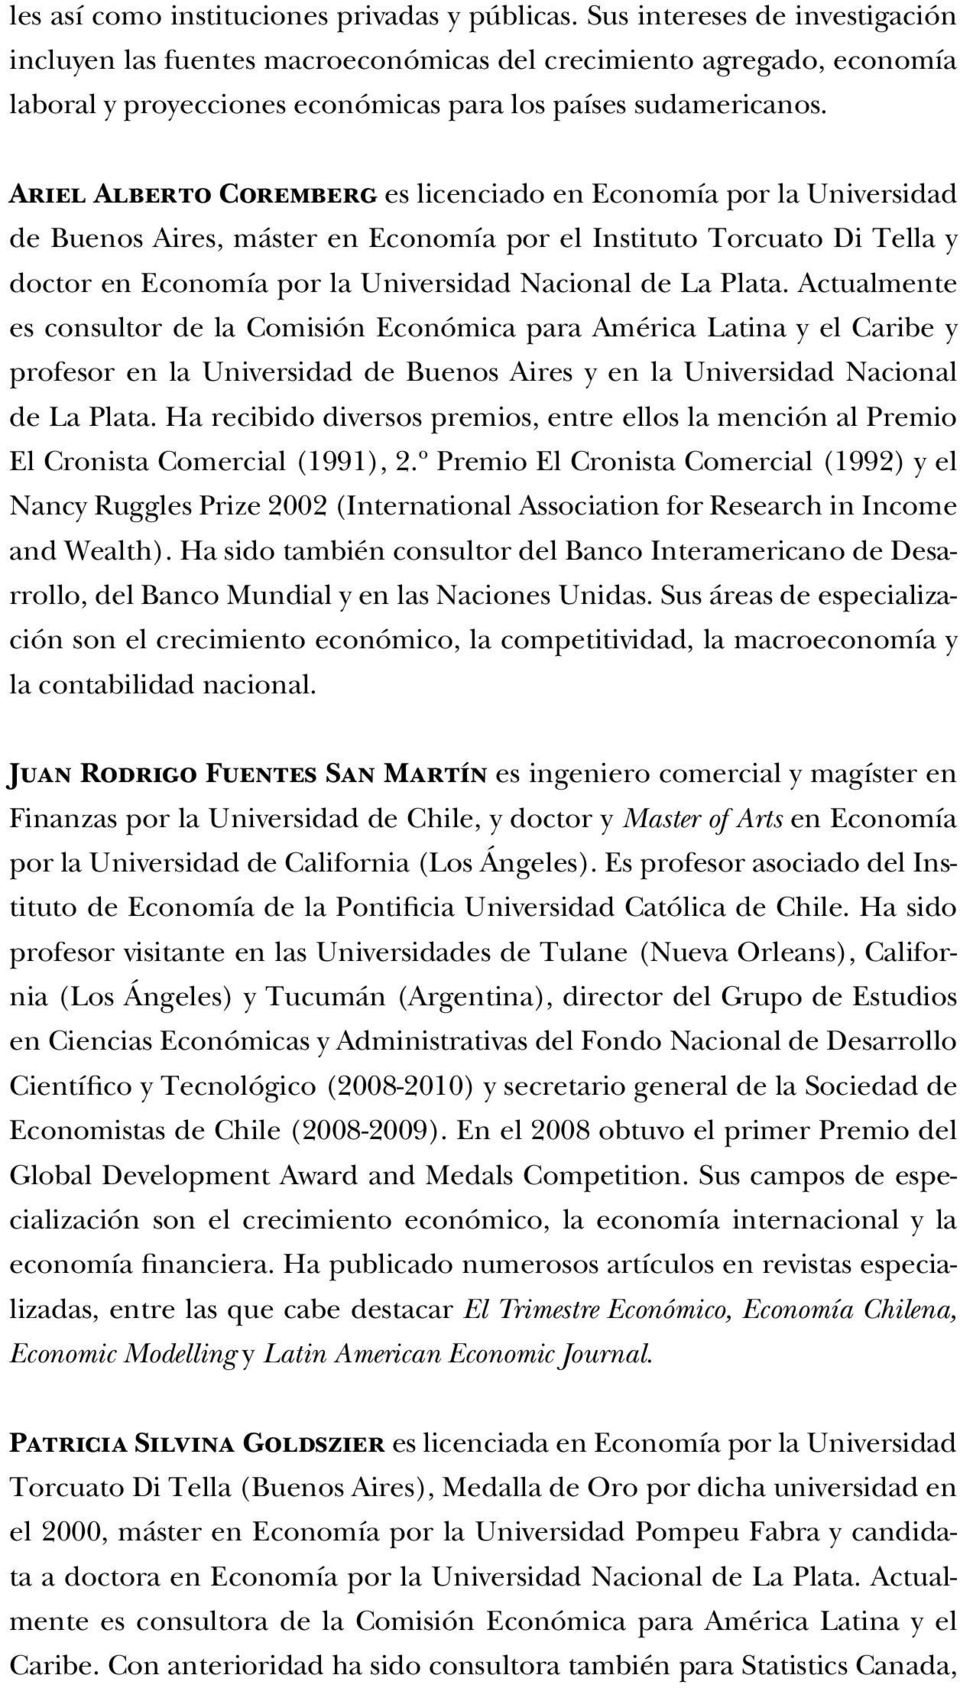 Ariel Alberto Coremberg es licenciado en Economía por la Universidad de Buenos Aires, máster en Economía por el Instituto Torcuato Di Tella y doctor en Economía por la Universidad Nacional de La